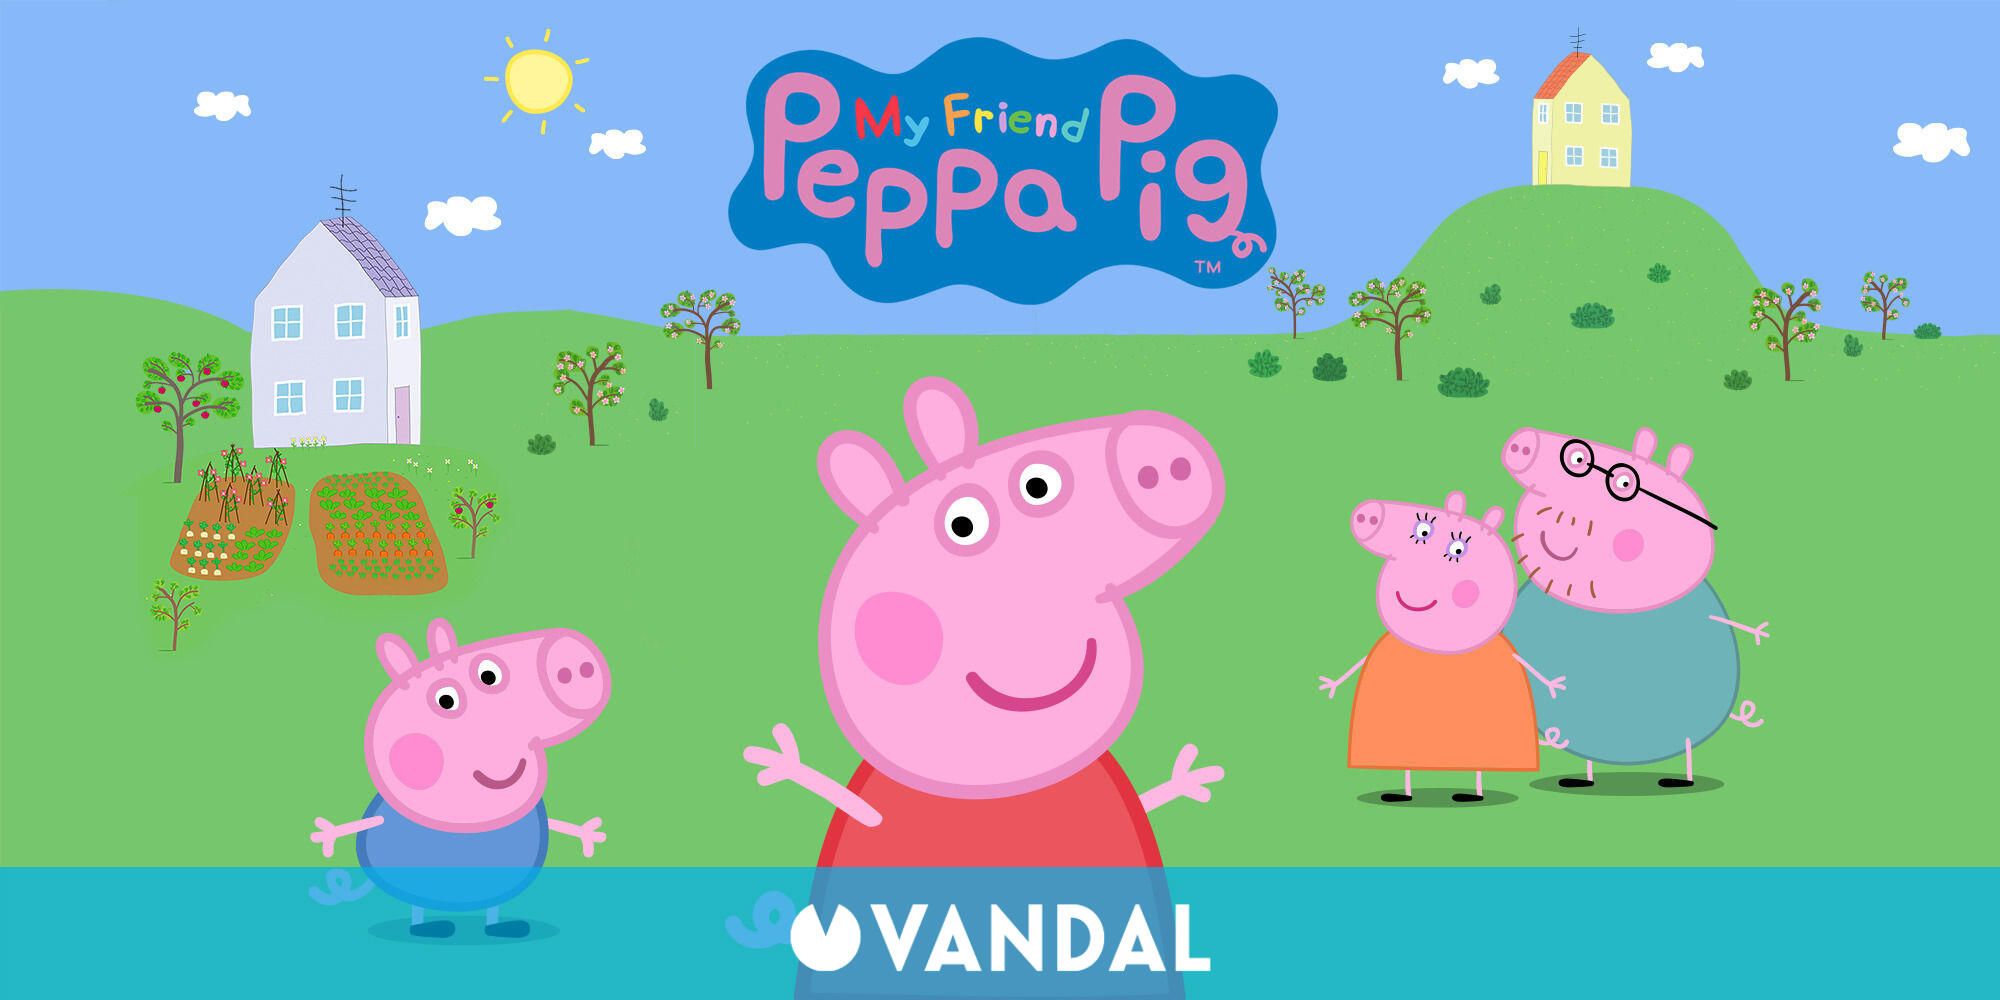 Anunciado My Friend Peppa Pig, una aventura con los personajes de la serie  - Vandal